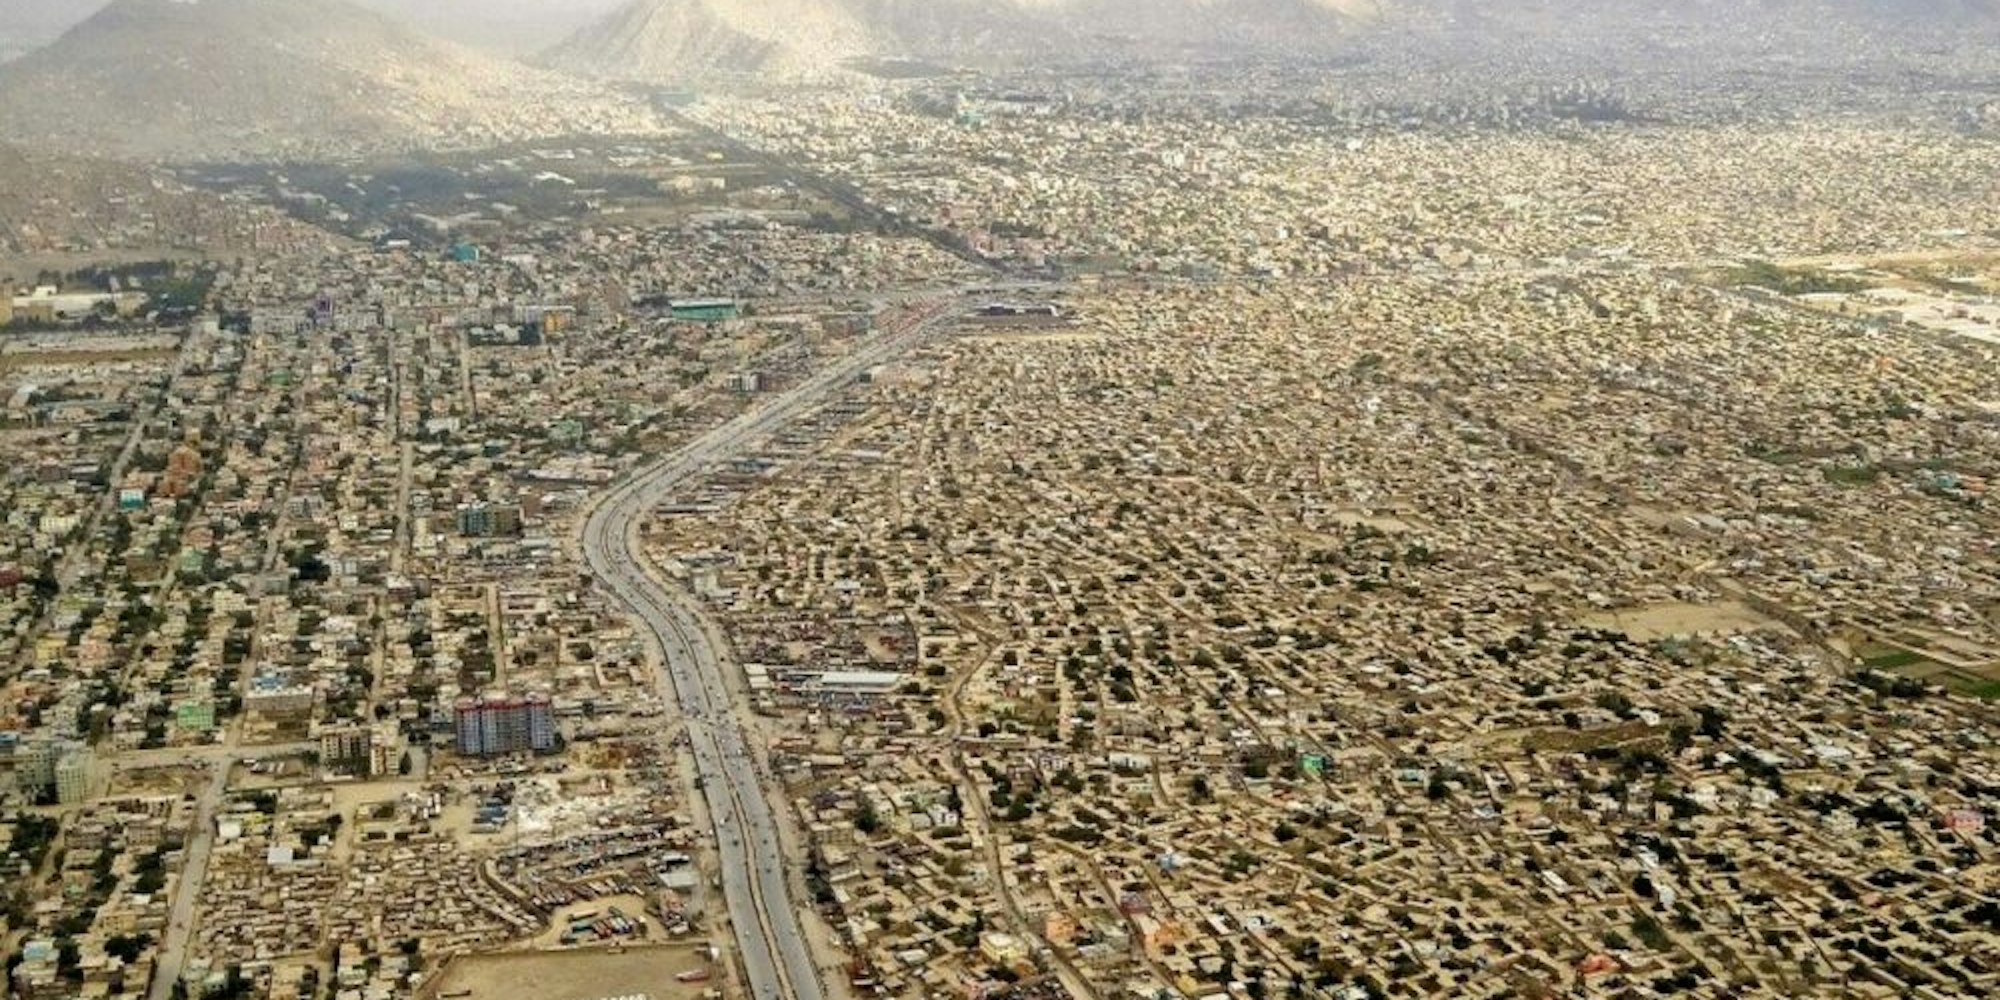 Atemberaubend ist der Ausblick beim Anflug auf die afghanische Hauptstadt Kabul.